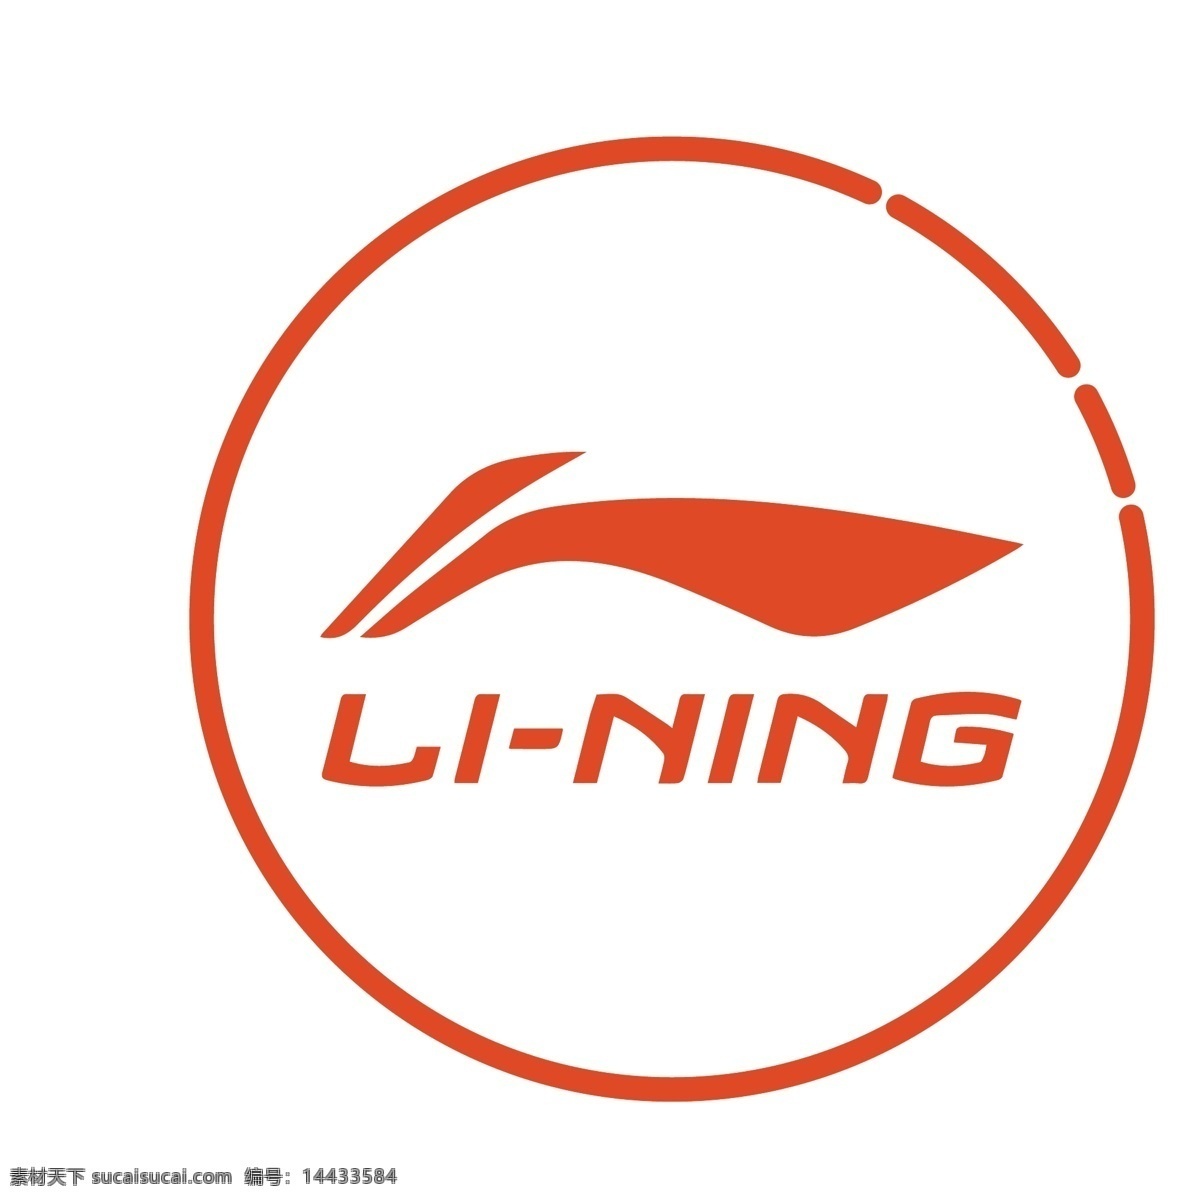 橙色 简约 圆形 李宁 运动 品牌 logo 图标 运动品牌 logo图标 企业商标 标识 标志 矢量 立体